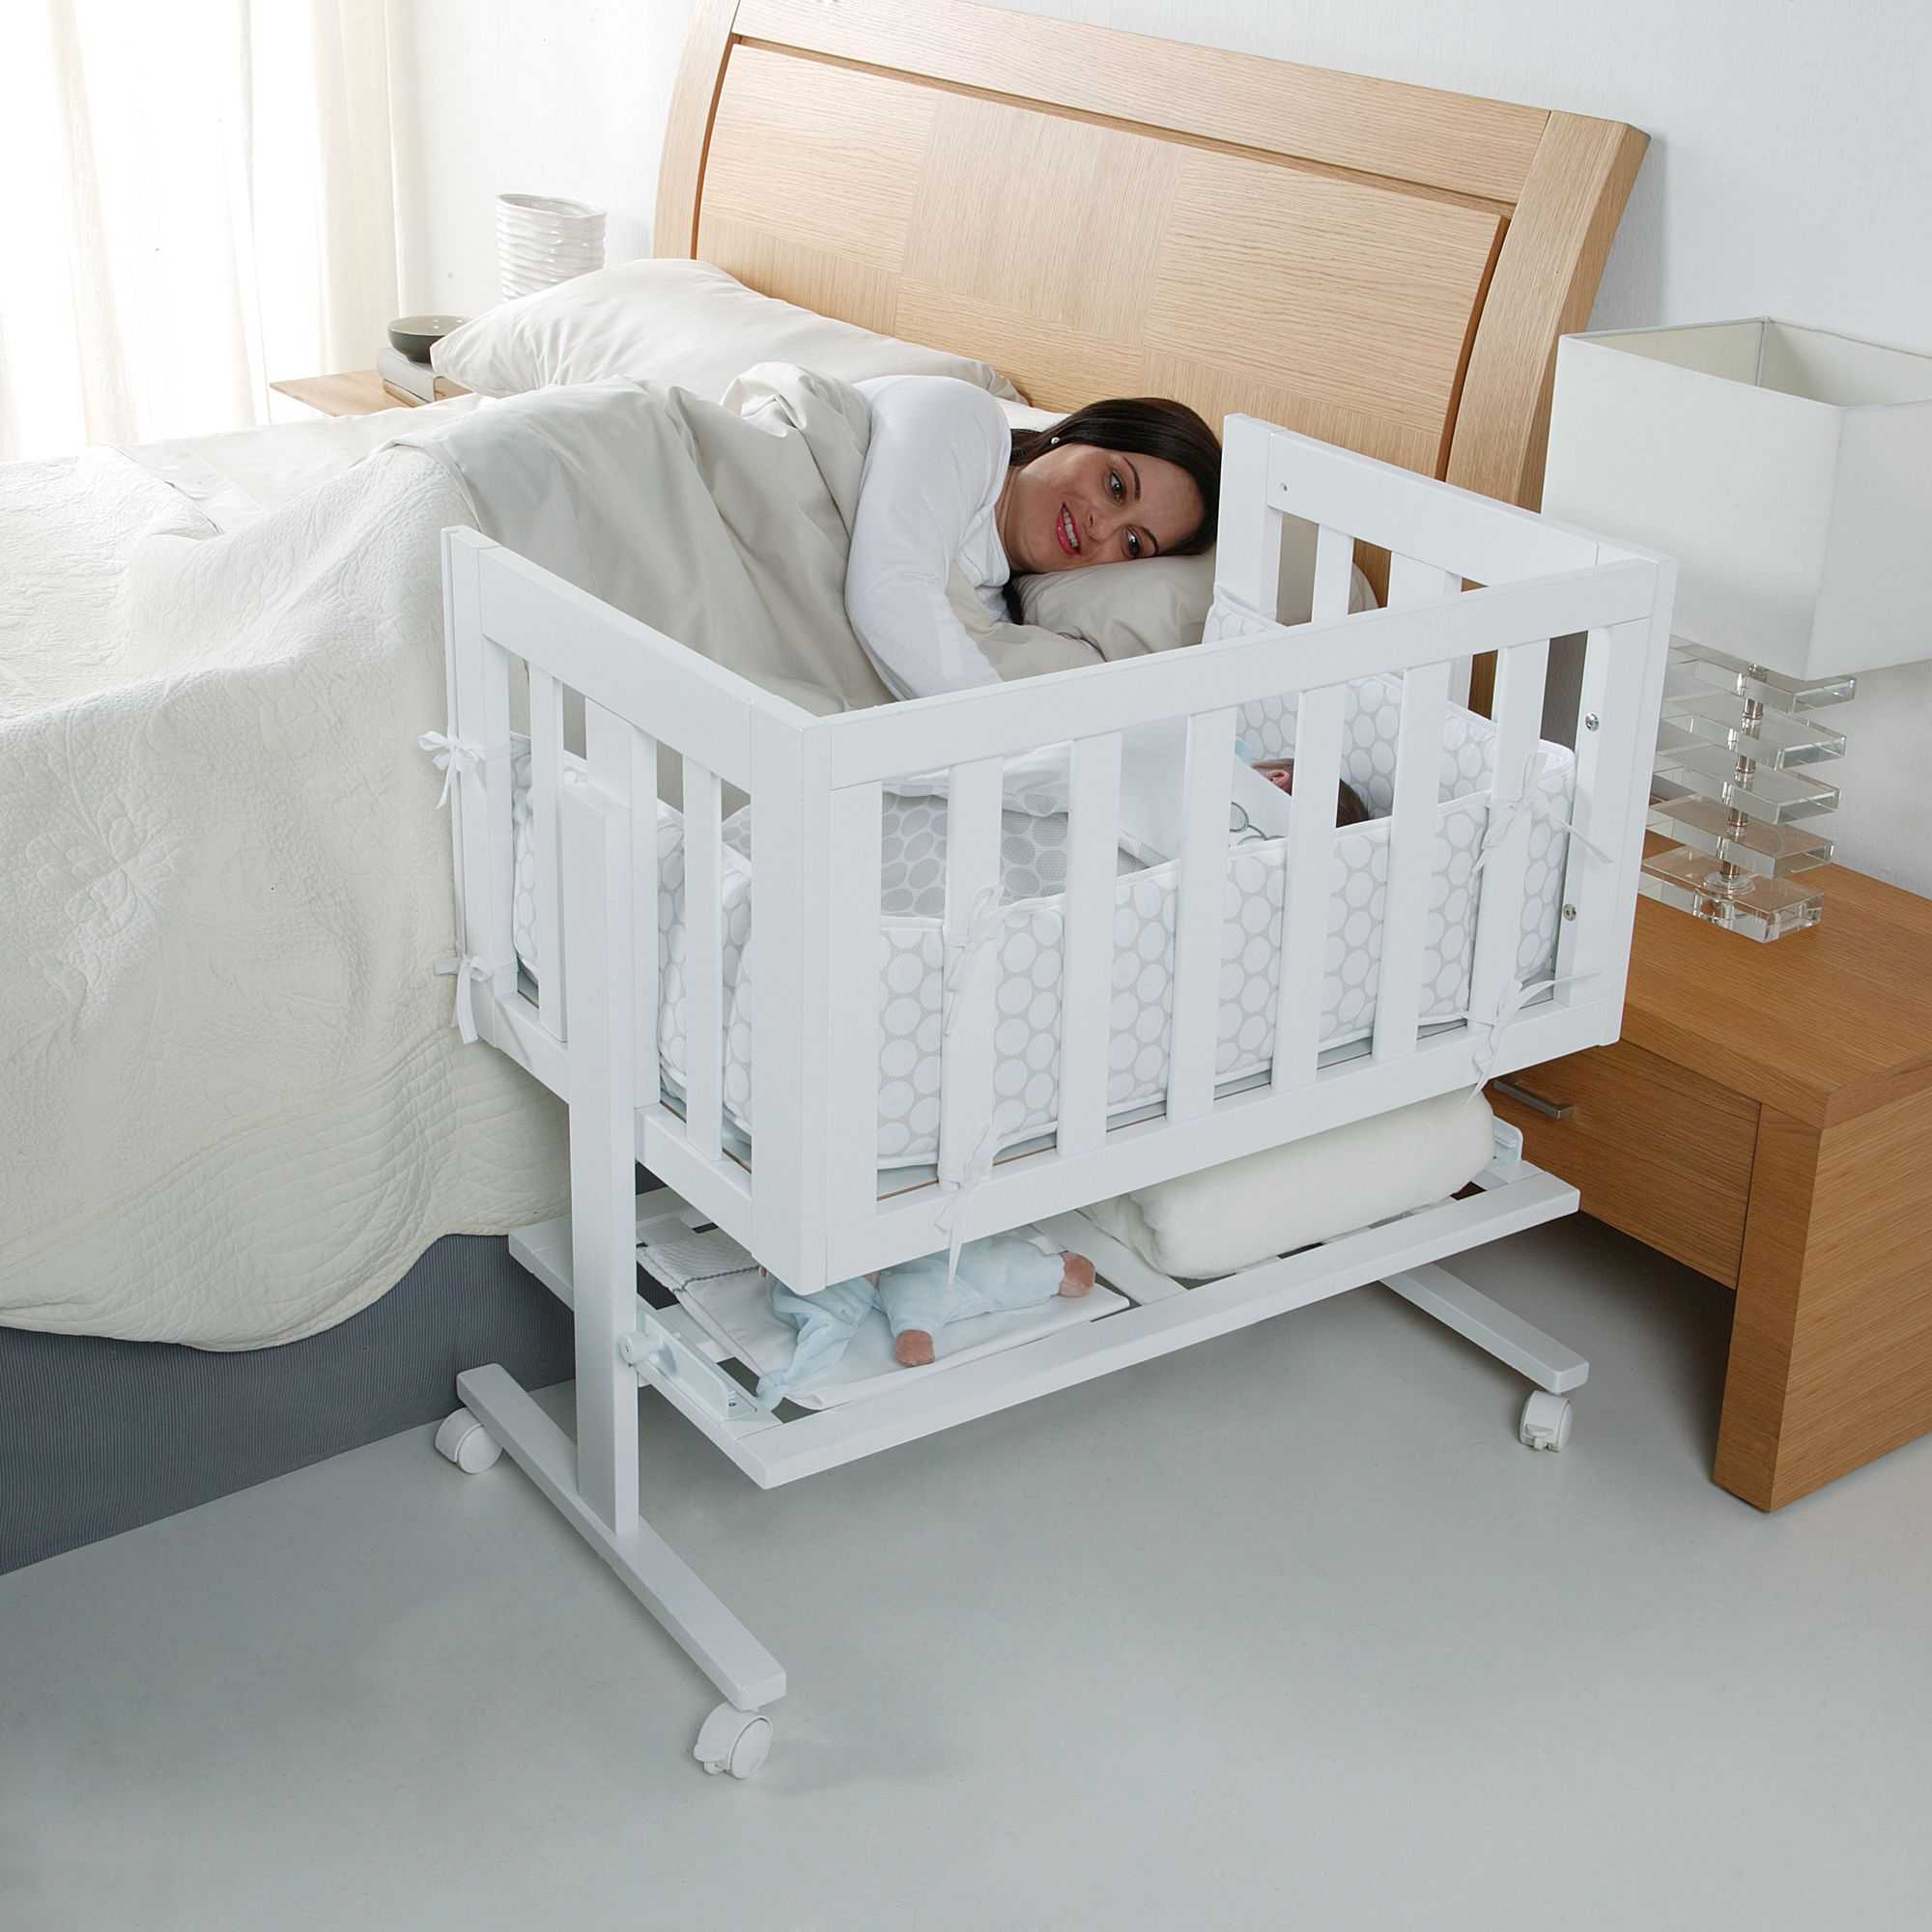 Как выбрать детскую кроватку? как правильно выбирать и какую кровать лучше взять для ребенка 2-3 лет